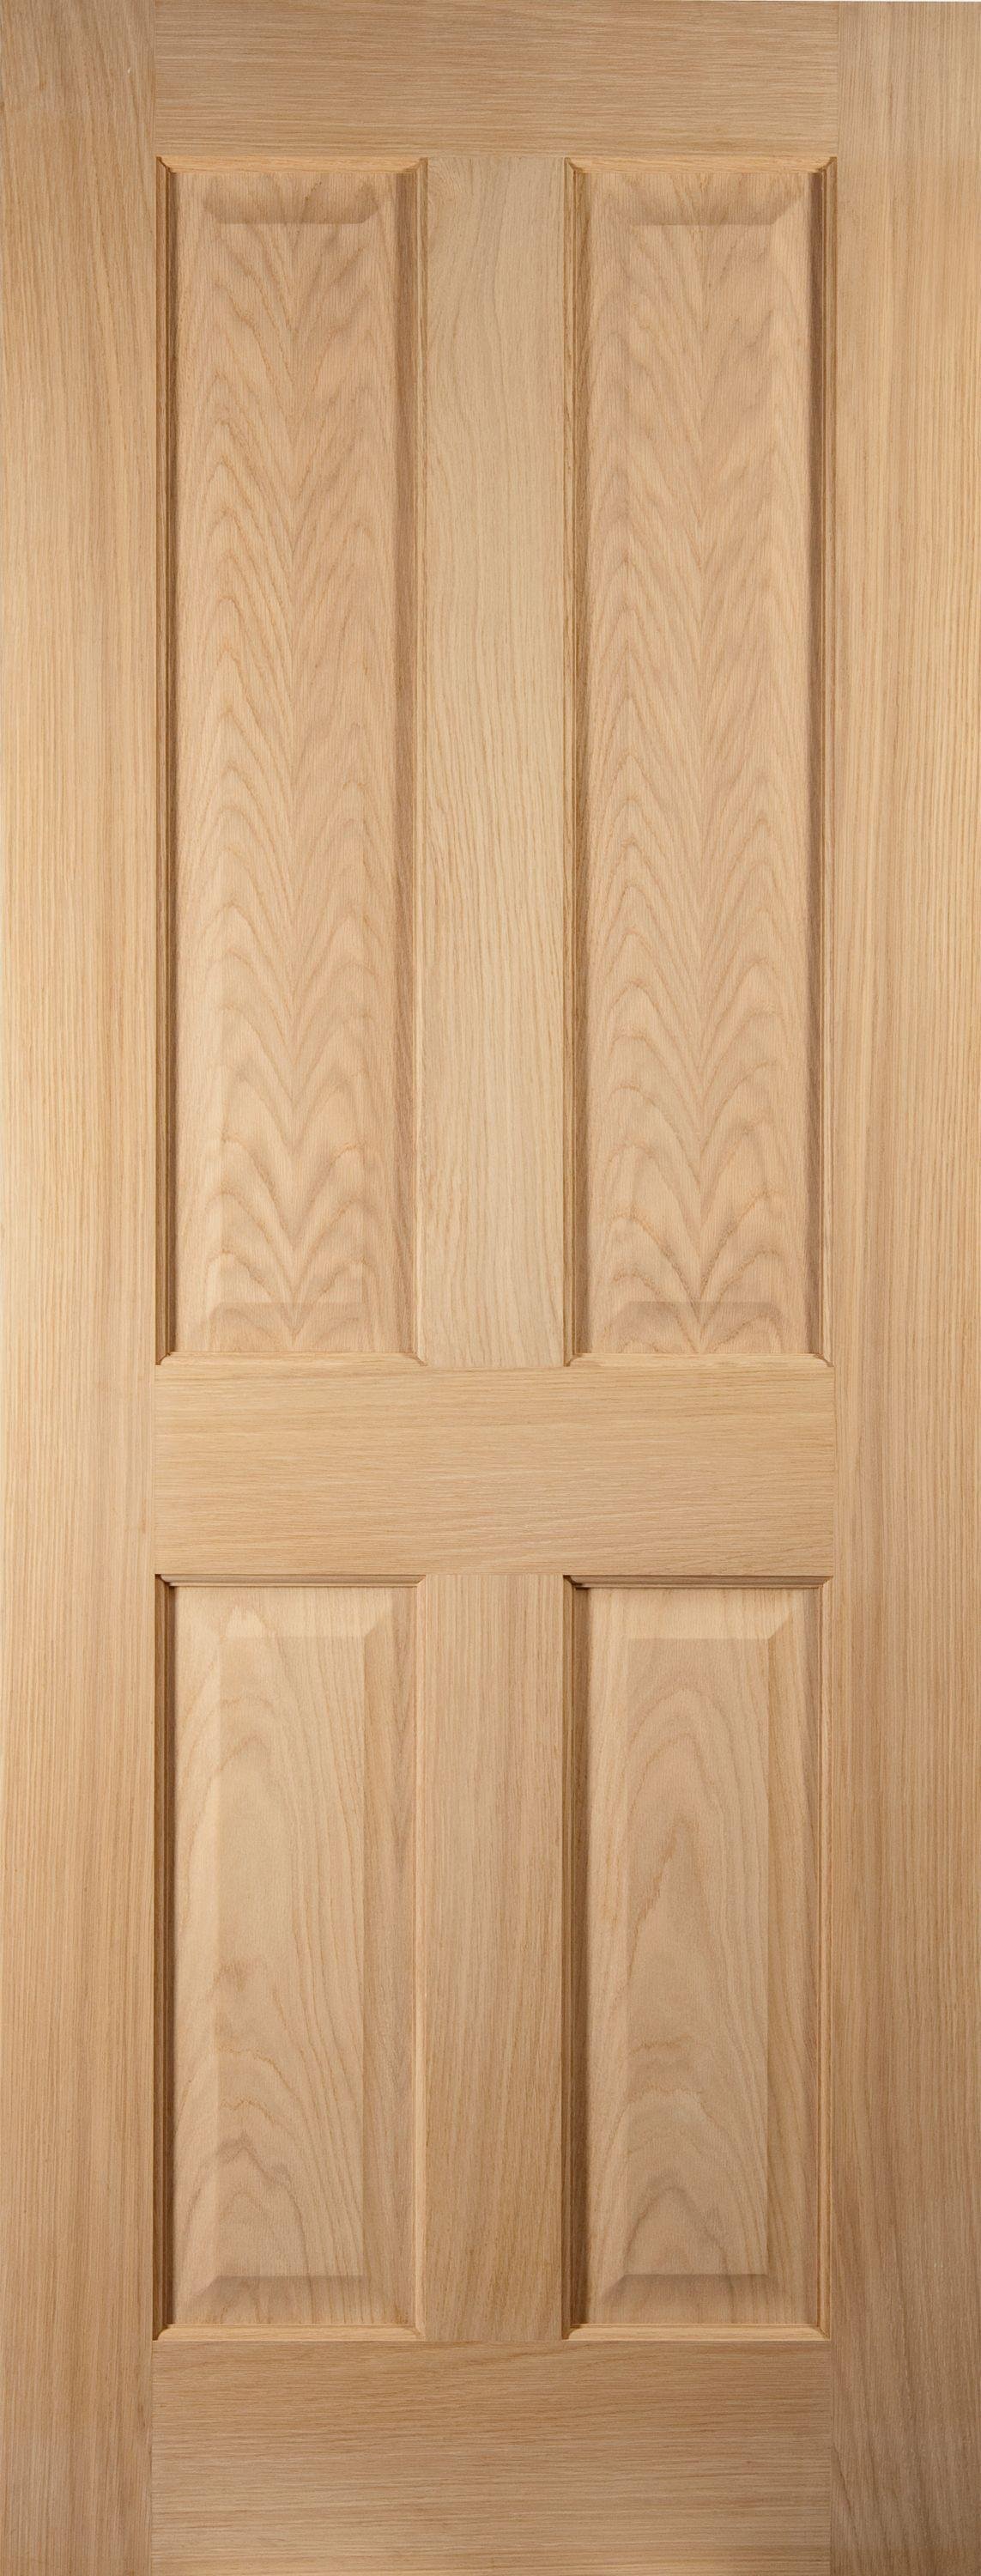 Jeld-Wen 4 Panel Oak Veneer Interior Door 1981 x 838mm. Review